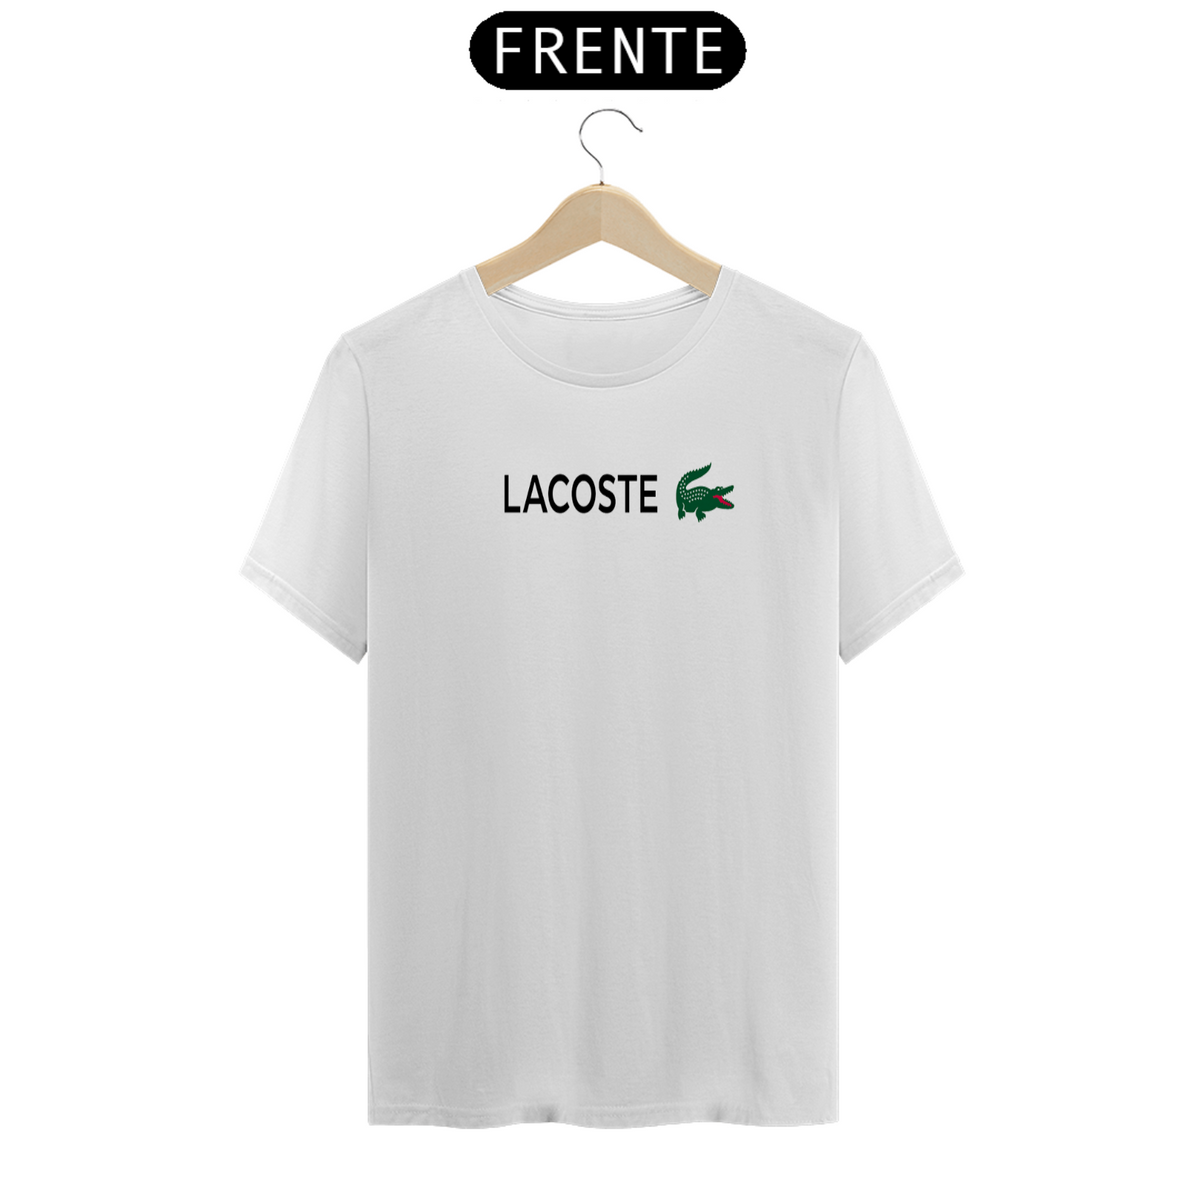 Nome do produto: Camiseta branca Lacoste 